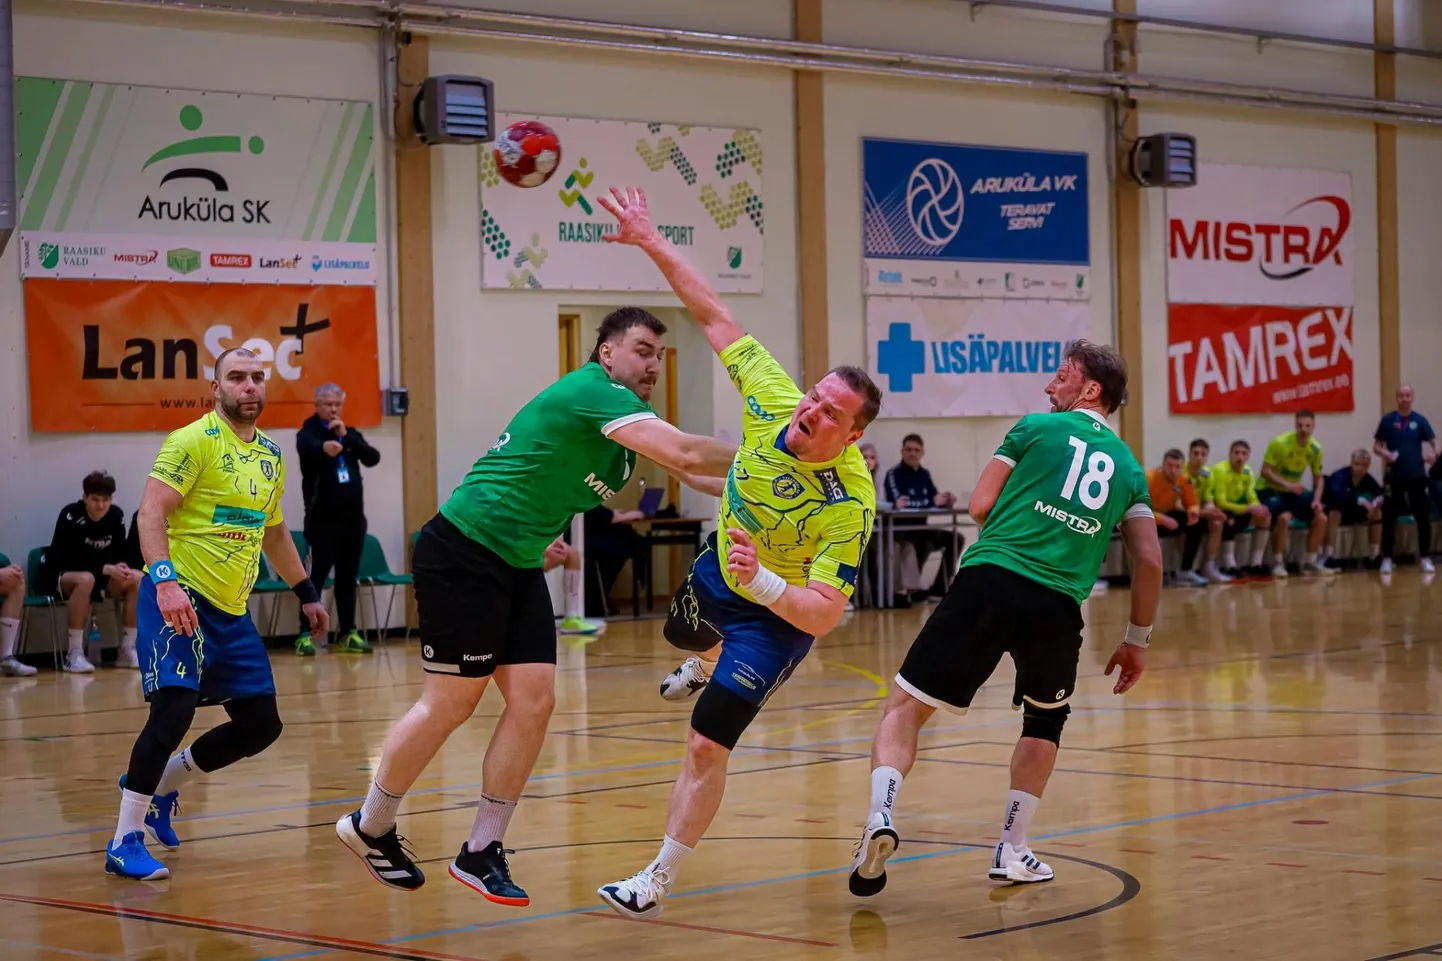 Laupäeval Aruküla spordihoones peetud Balti liiga kohtumises, mille punktid läksid ka Eesti meistriliiga arvestusse, tuli Viljandi HC-l tunnistada Mistra 36:21 paremust.